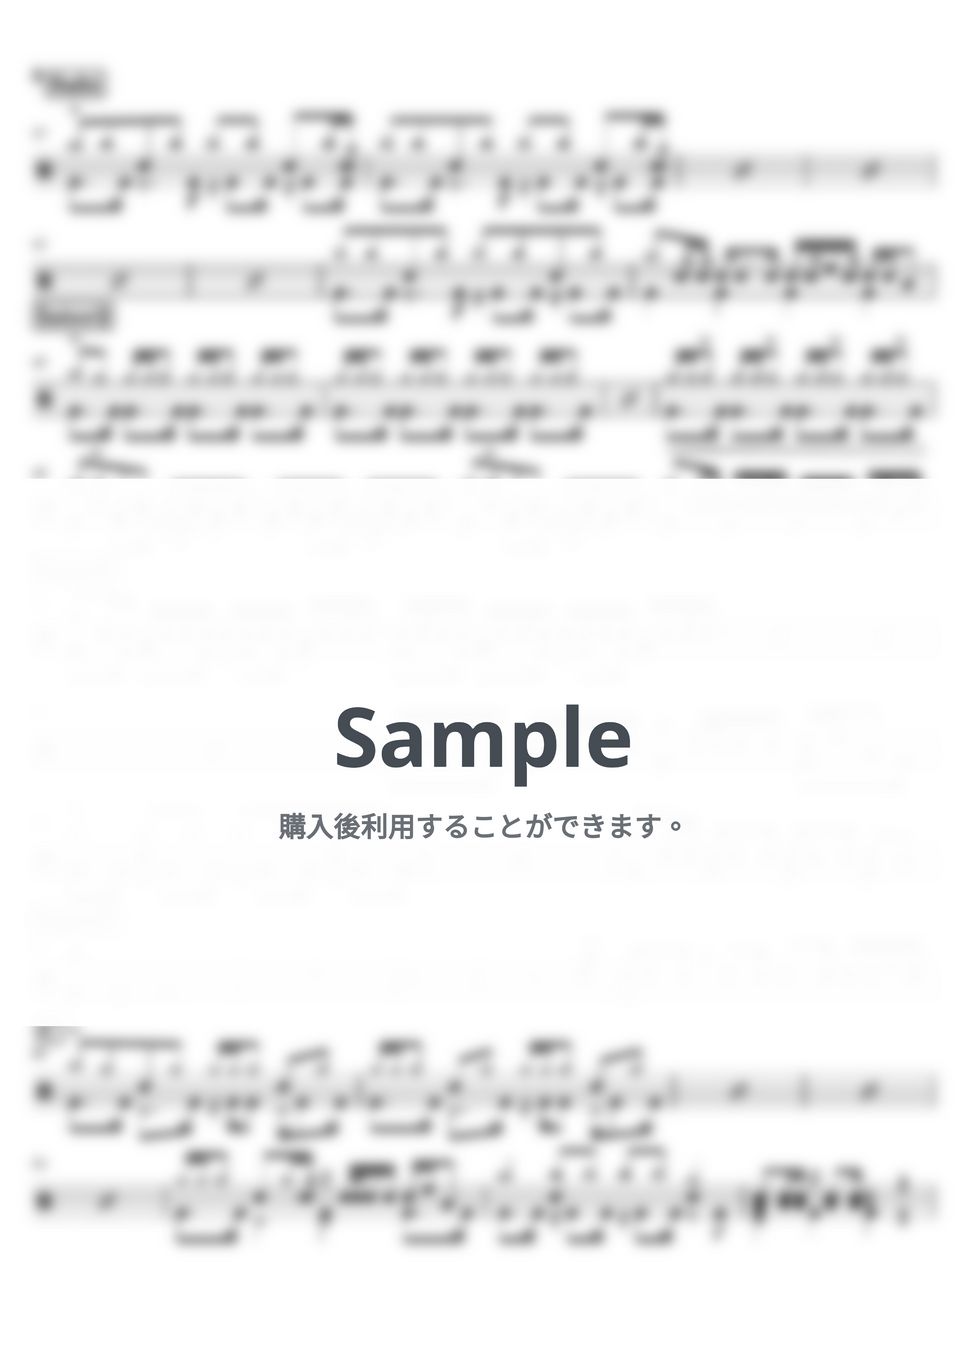 riddim saunter - Dear joyce (ドラム譜面) by cabal